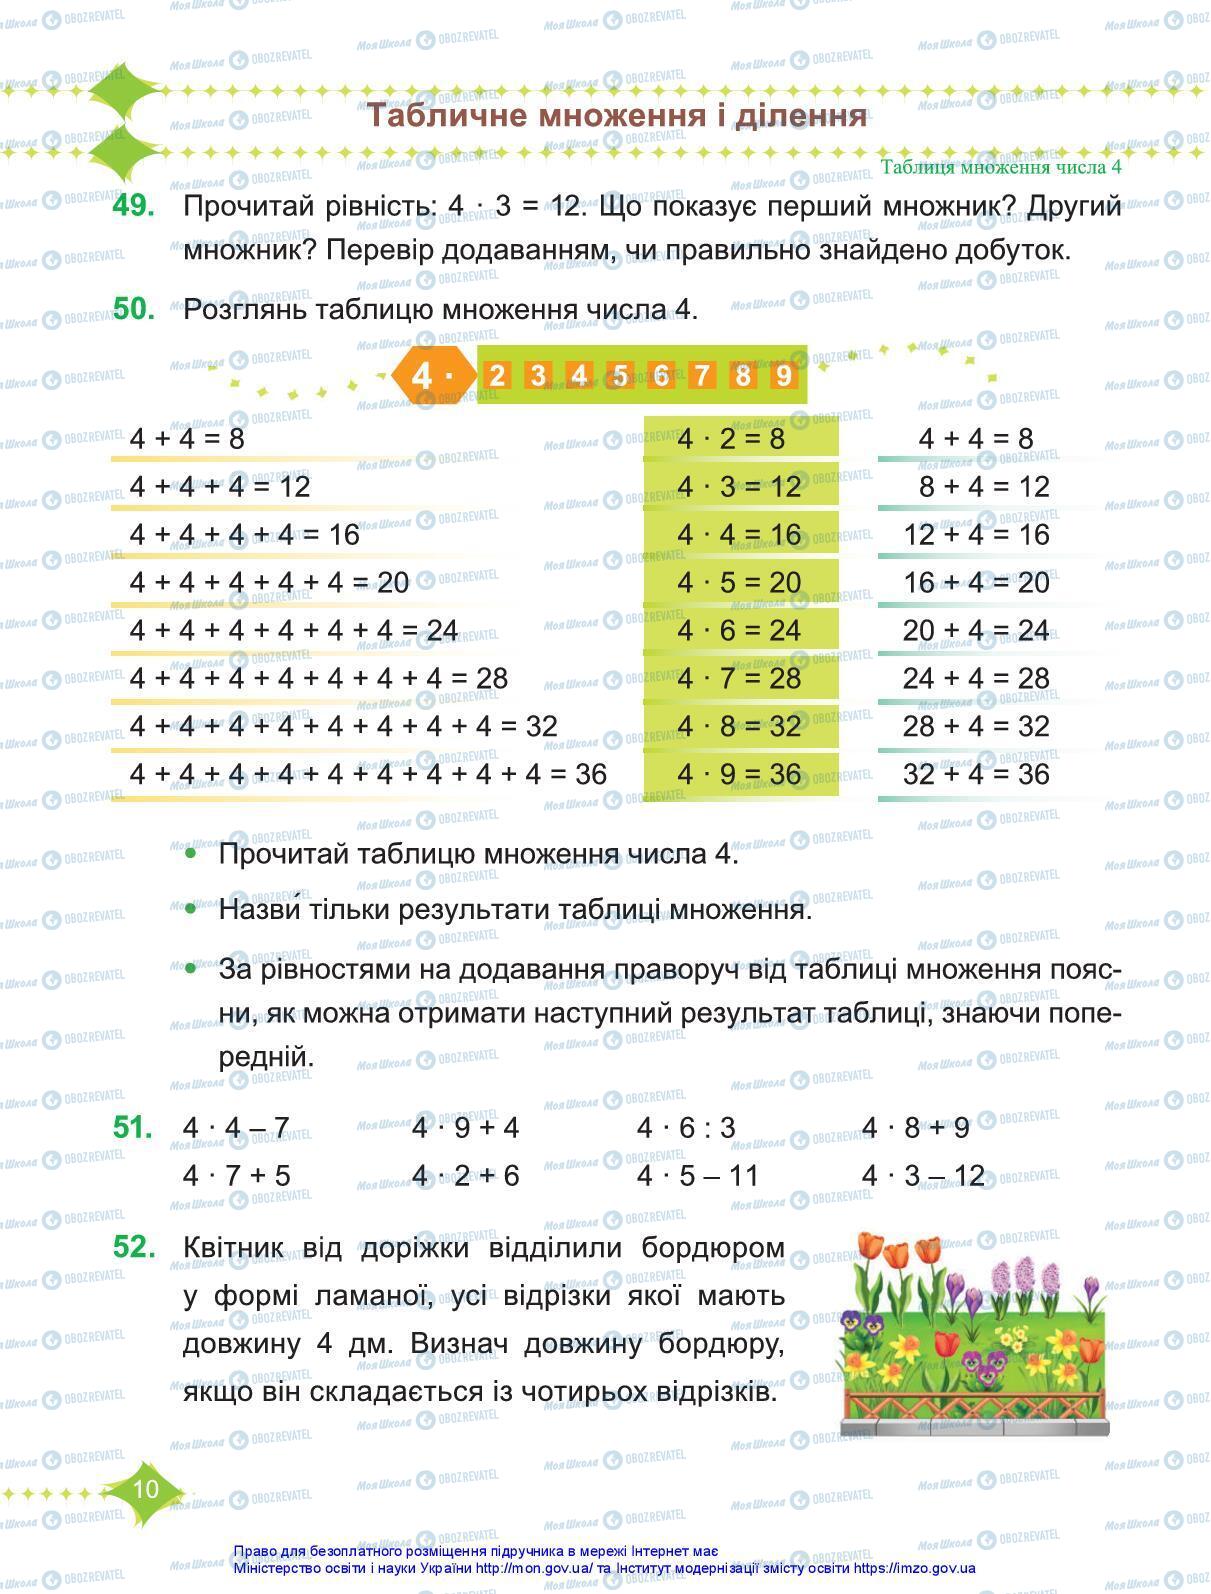 Підручники Математика 3 клас сторінка 10